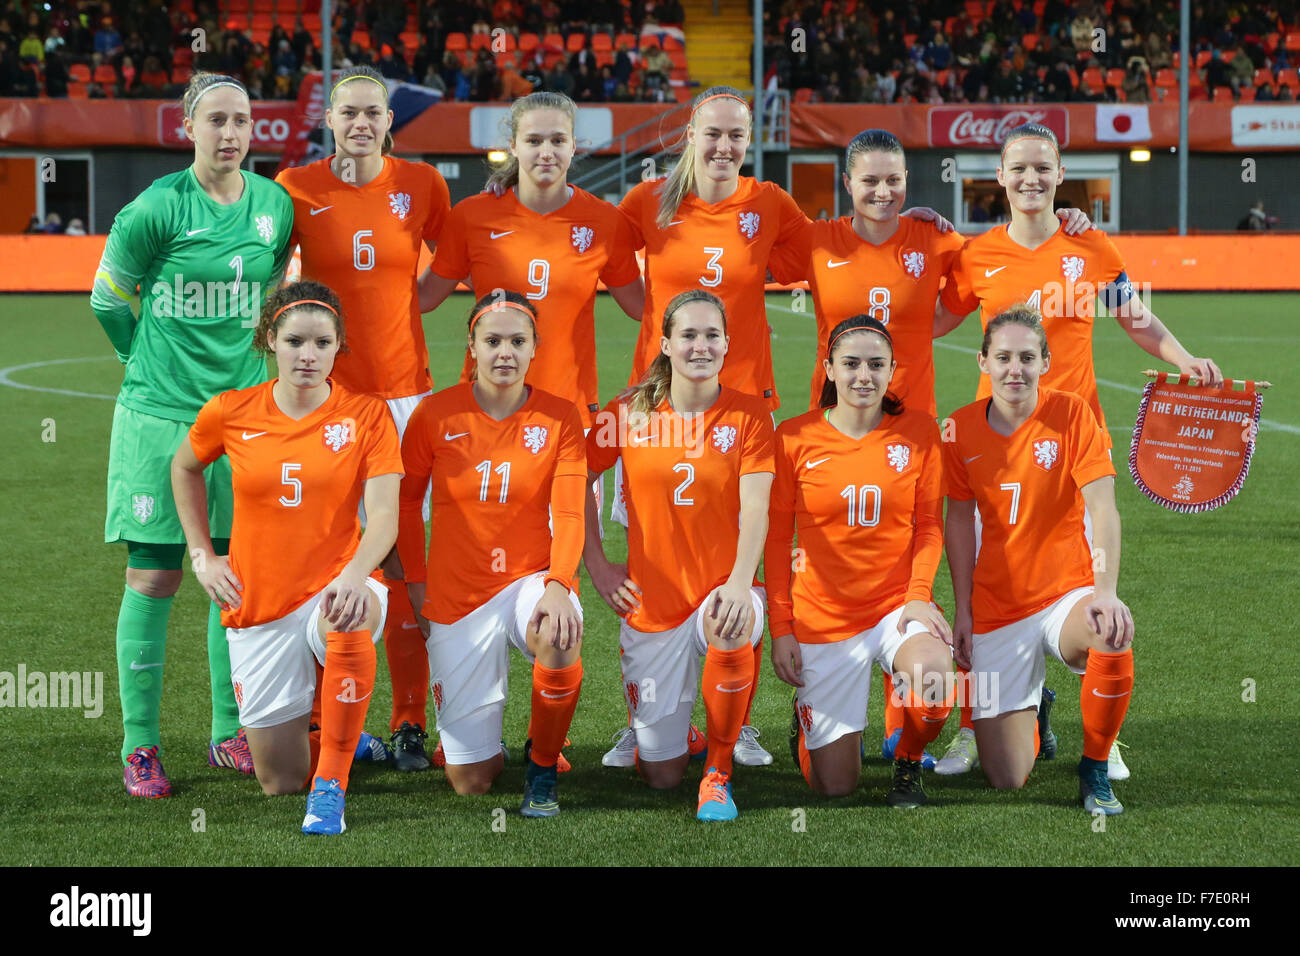 netherlands women's soccer jersey